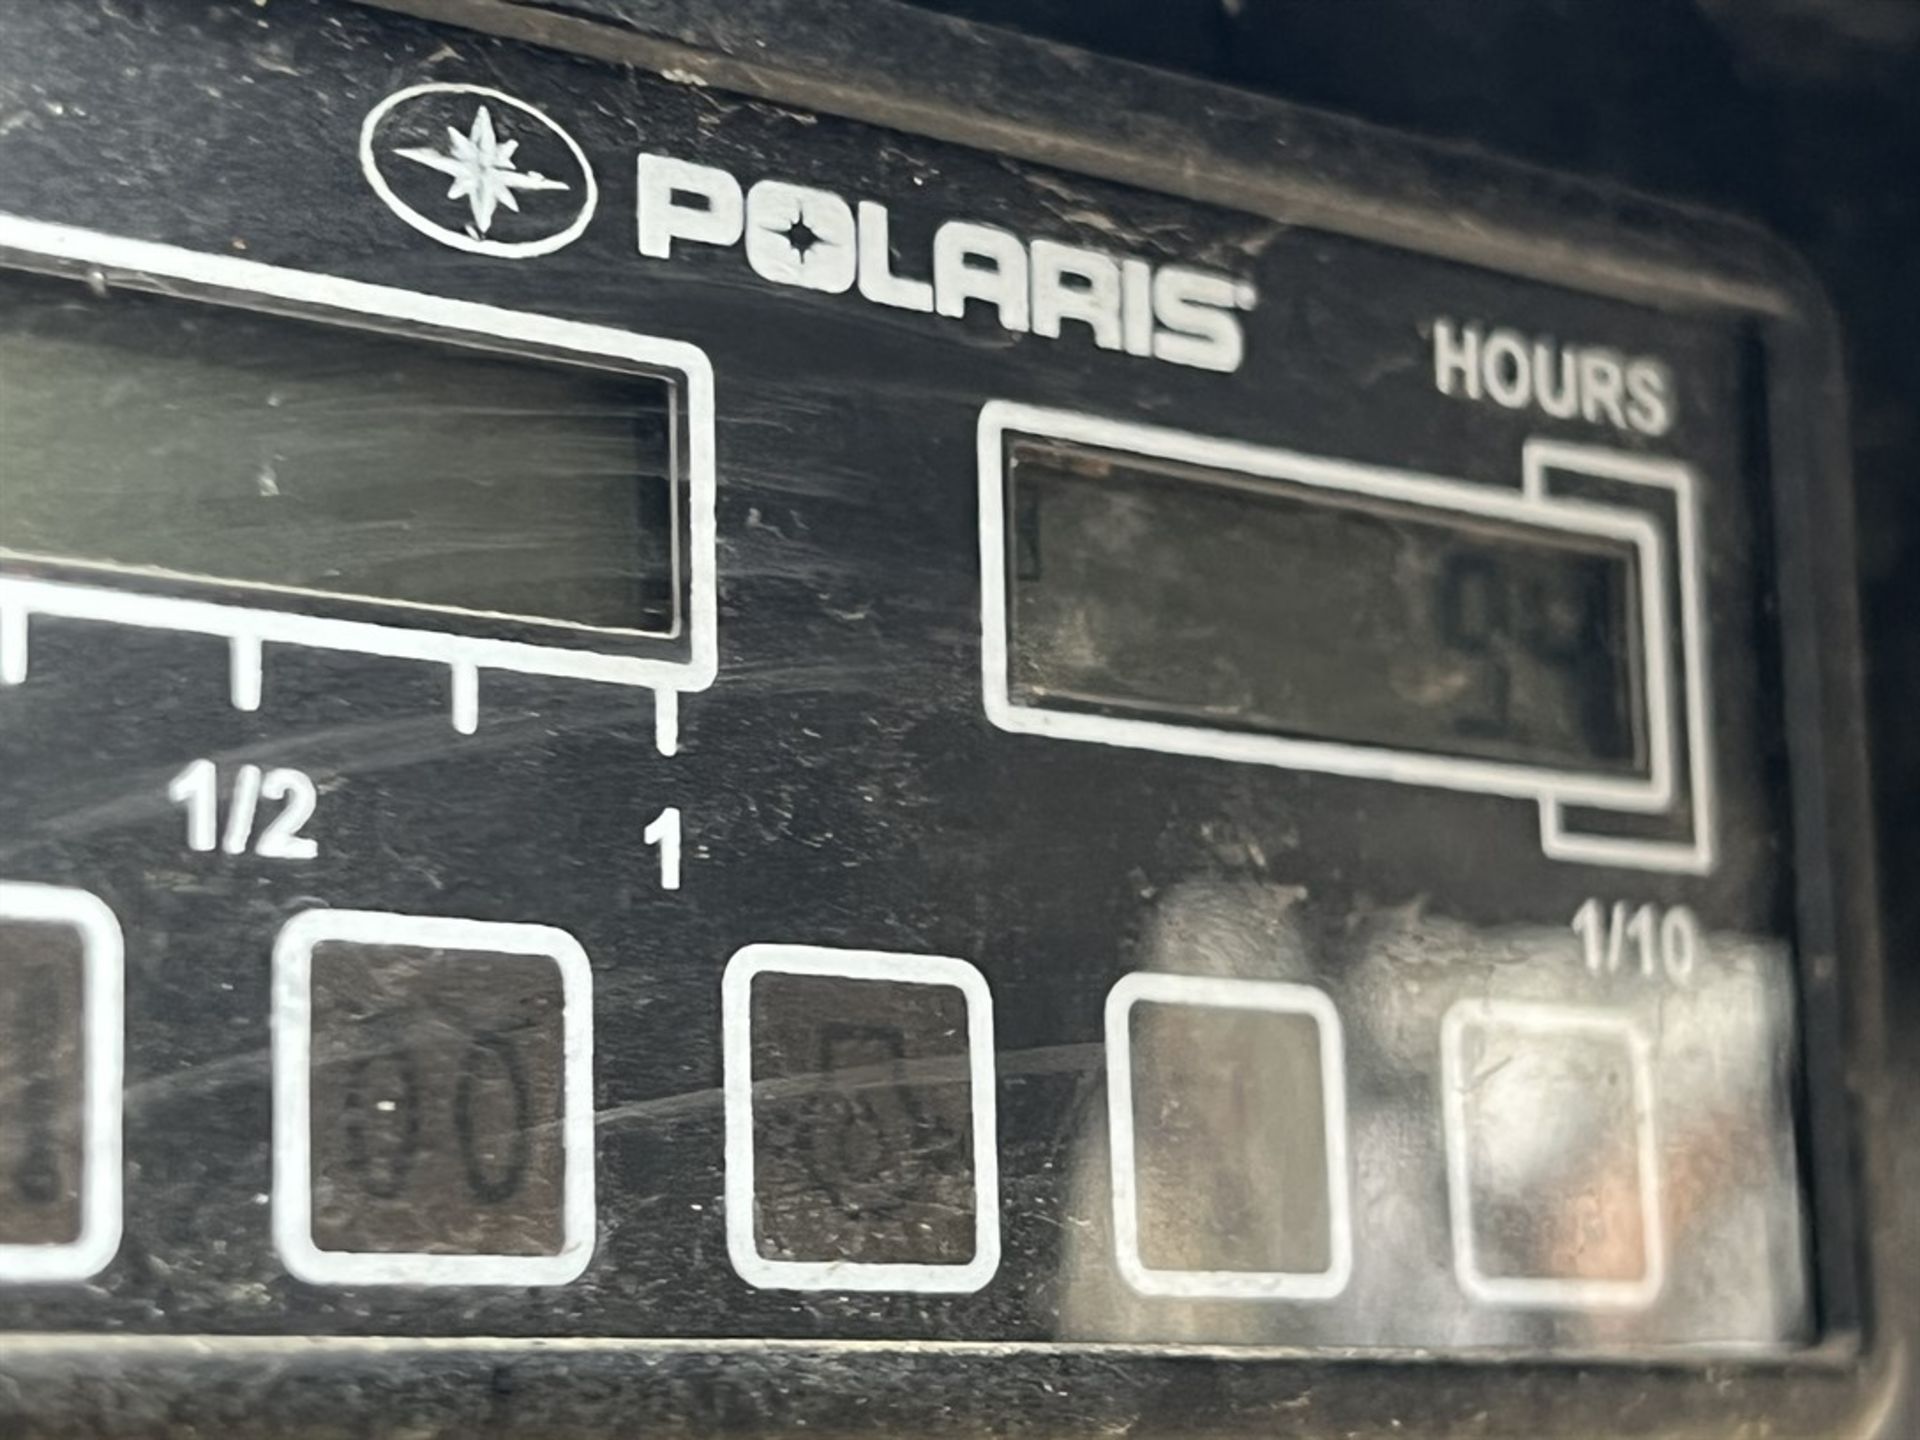 POLARIS ASV A10HM30GA Track Loader Skid Steer, VIN # PSA01066, w/ Front Bucket - Image 16 of 16